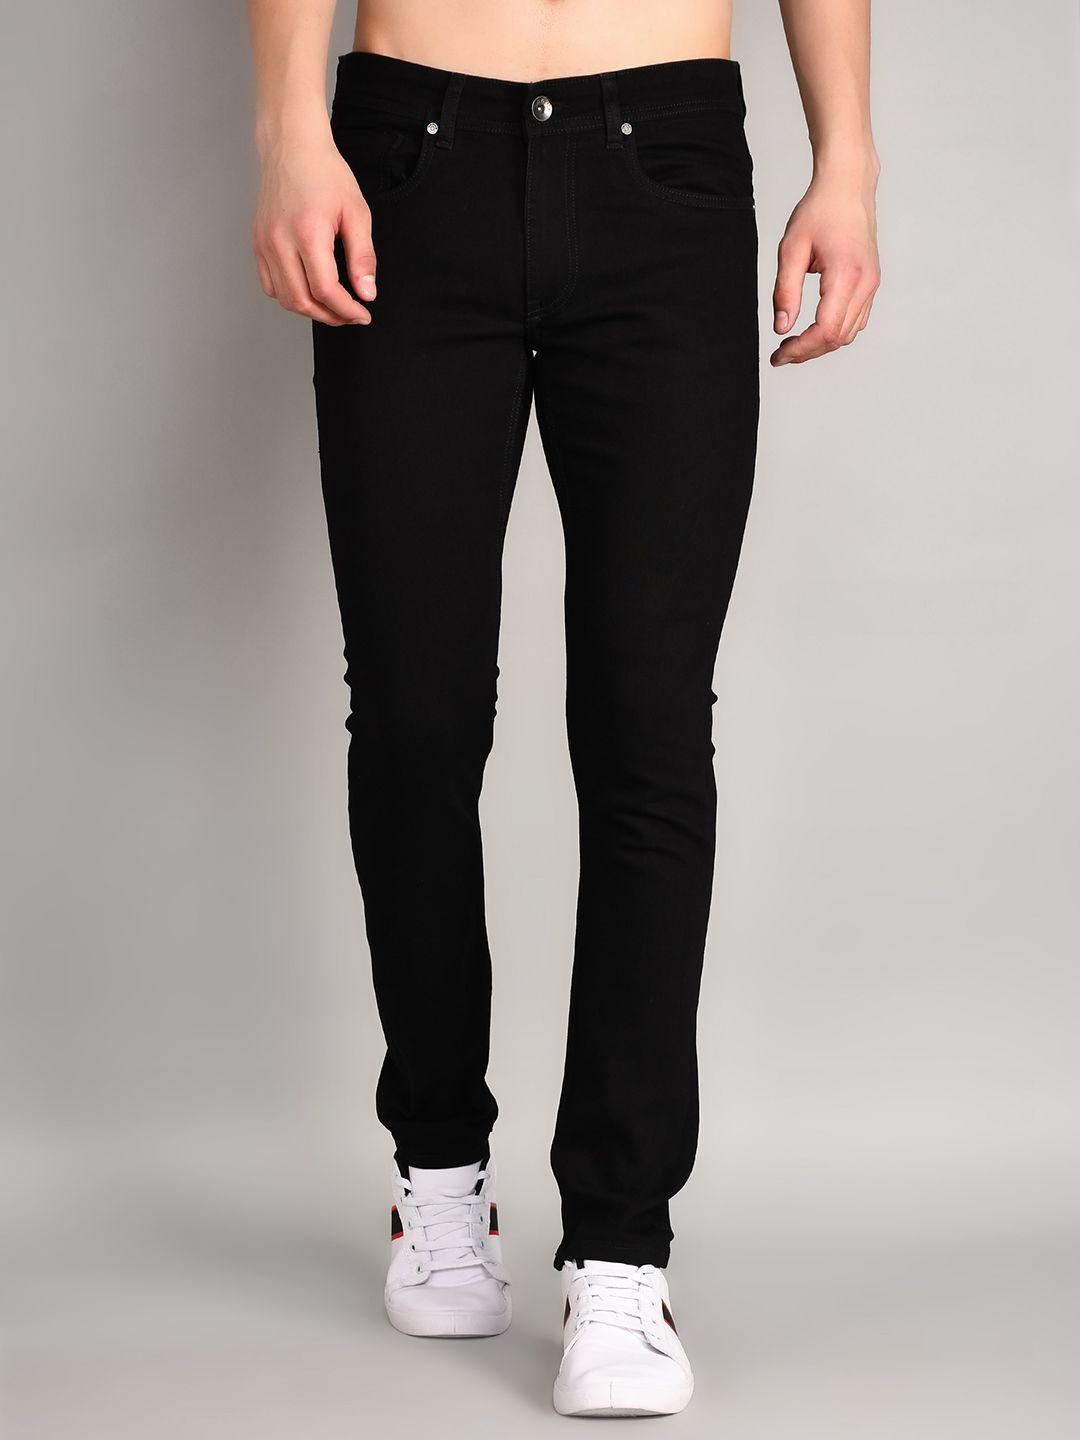 tim paris comfort mid-rise slim fit cotton stretchable jeans